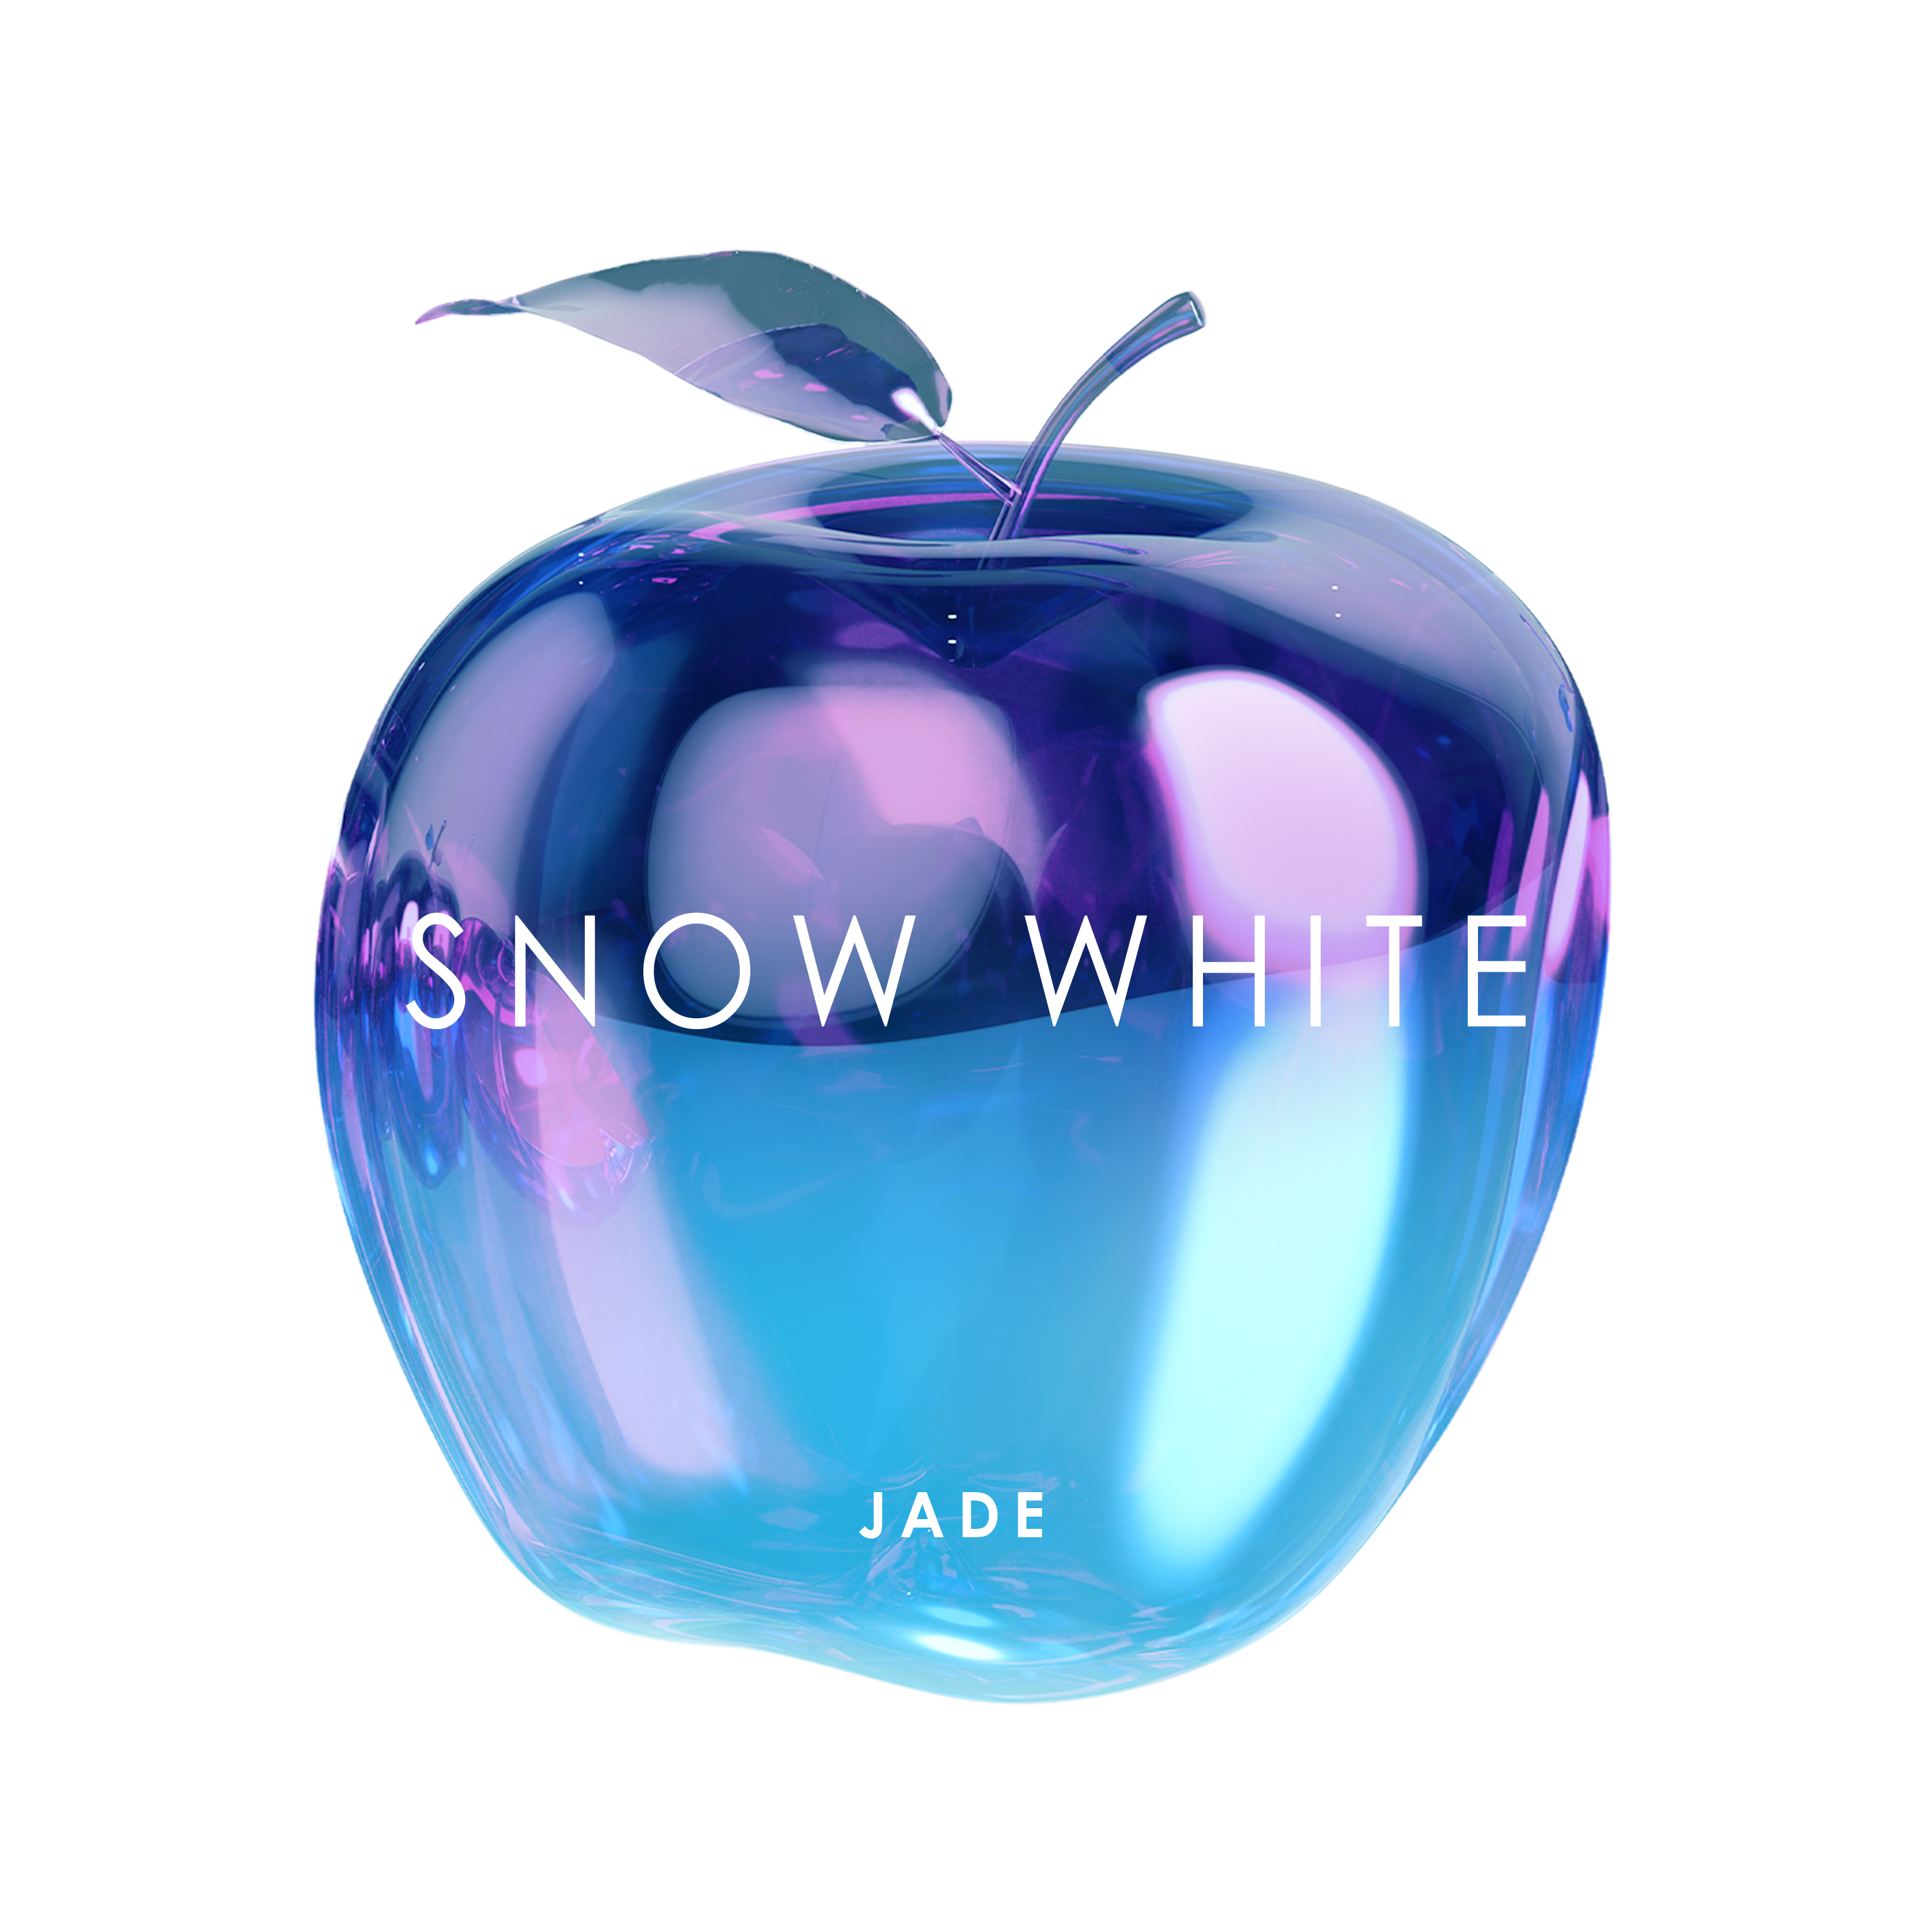 City Boy歌词 歌手JADE-专辑Snow White-单曲《City Boy》LRC歌词下载